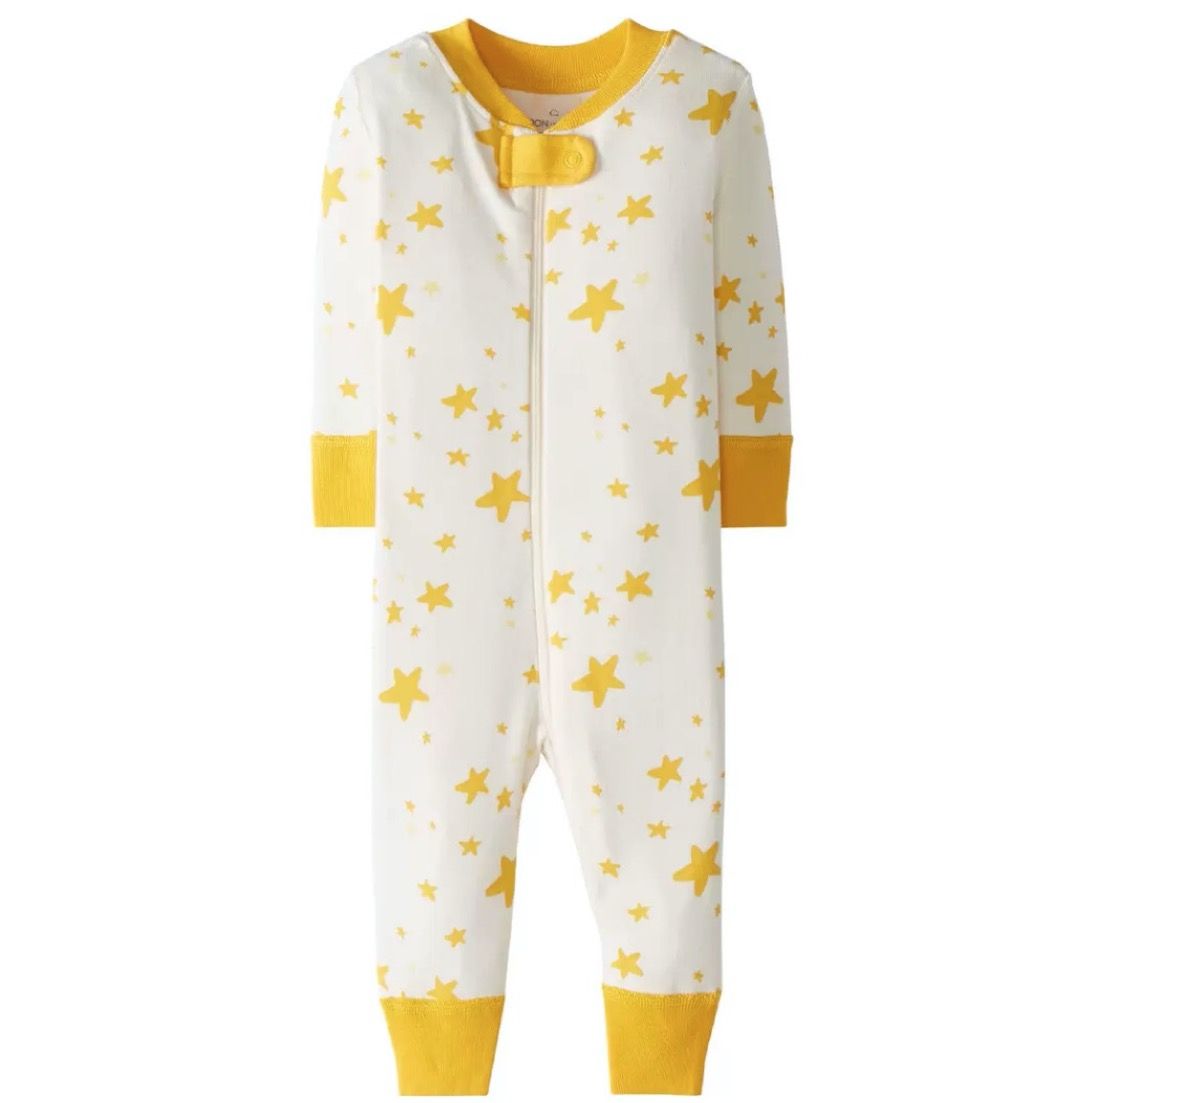 vita och gula pyjamas med dragkedja med stjärnor